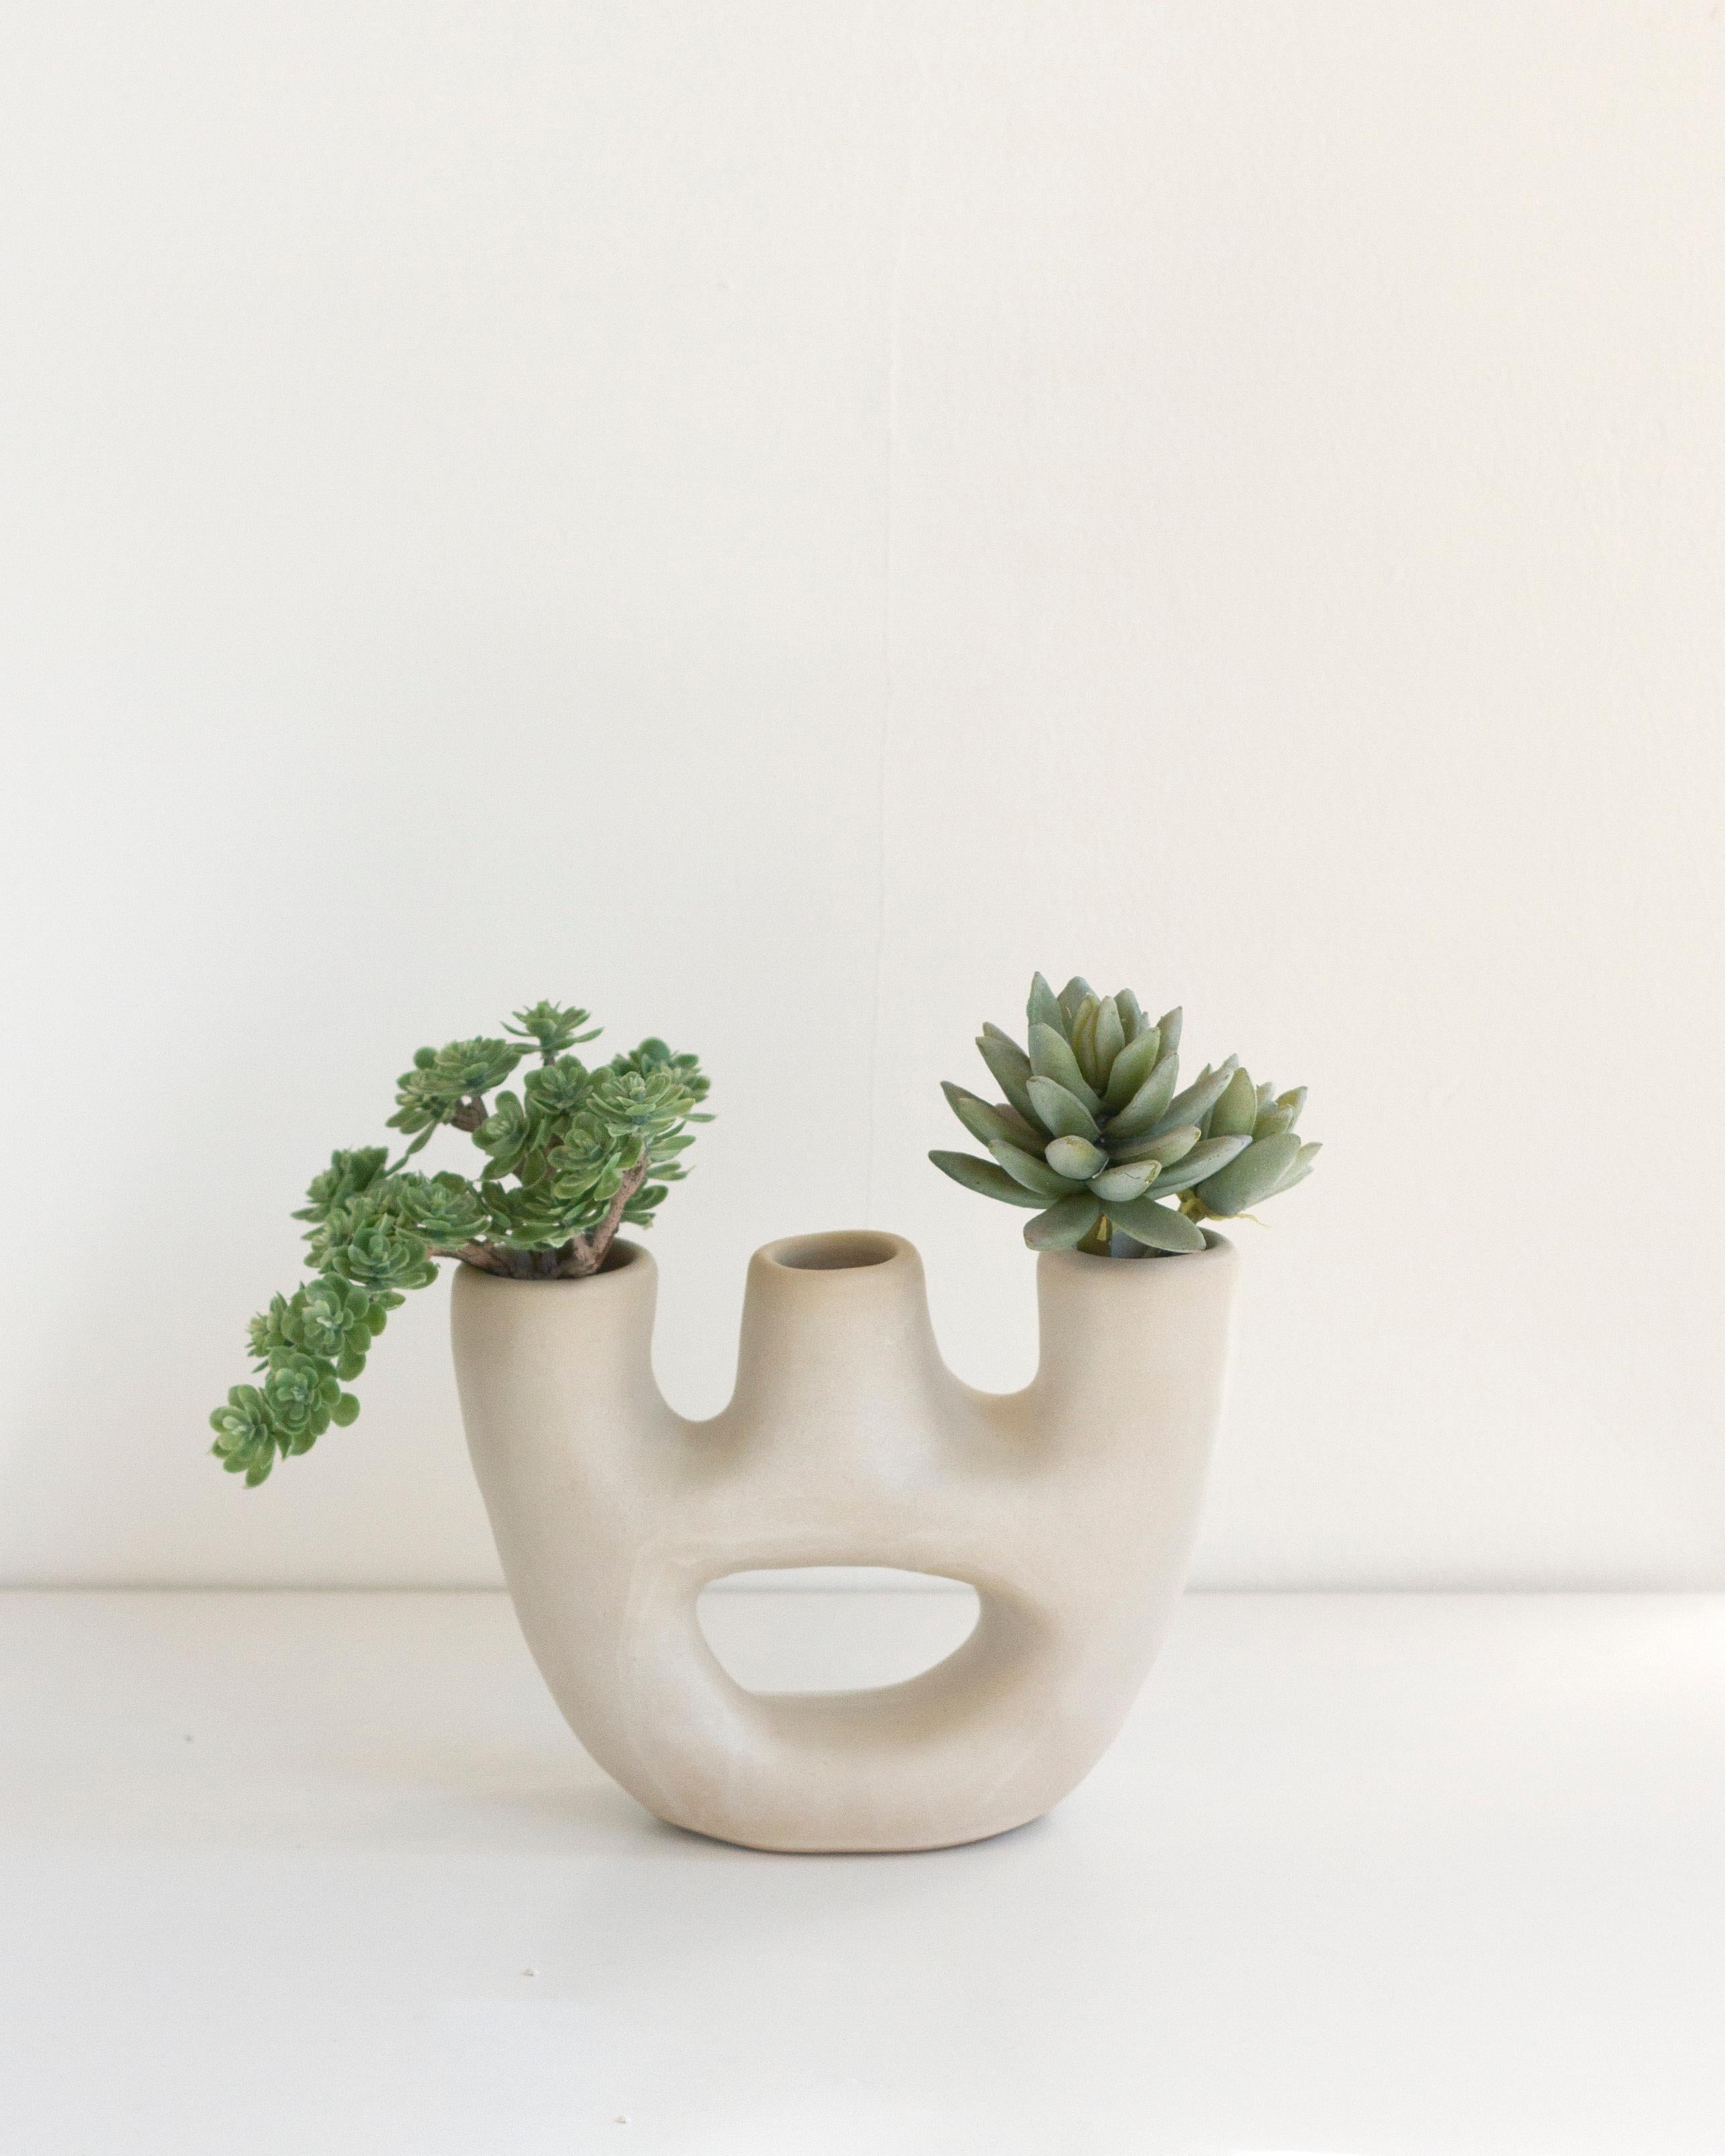 Ce vase minimaliste fait main en argile est parfait pour apporter un élément moderne et organique à votre décoration intérieure. Le design de ce vase s'inspire des chandeliers, avec trois ouvertures pour ajouter une touche unique. Idéal pour les